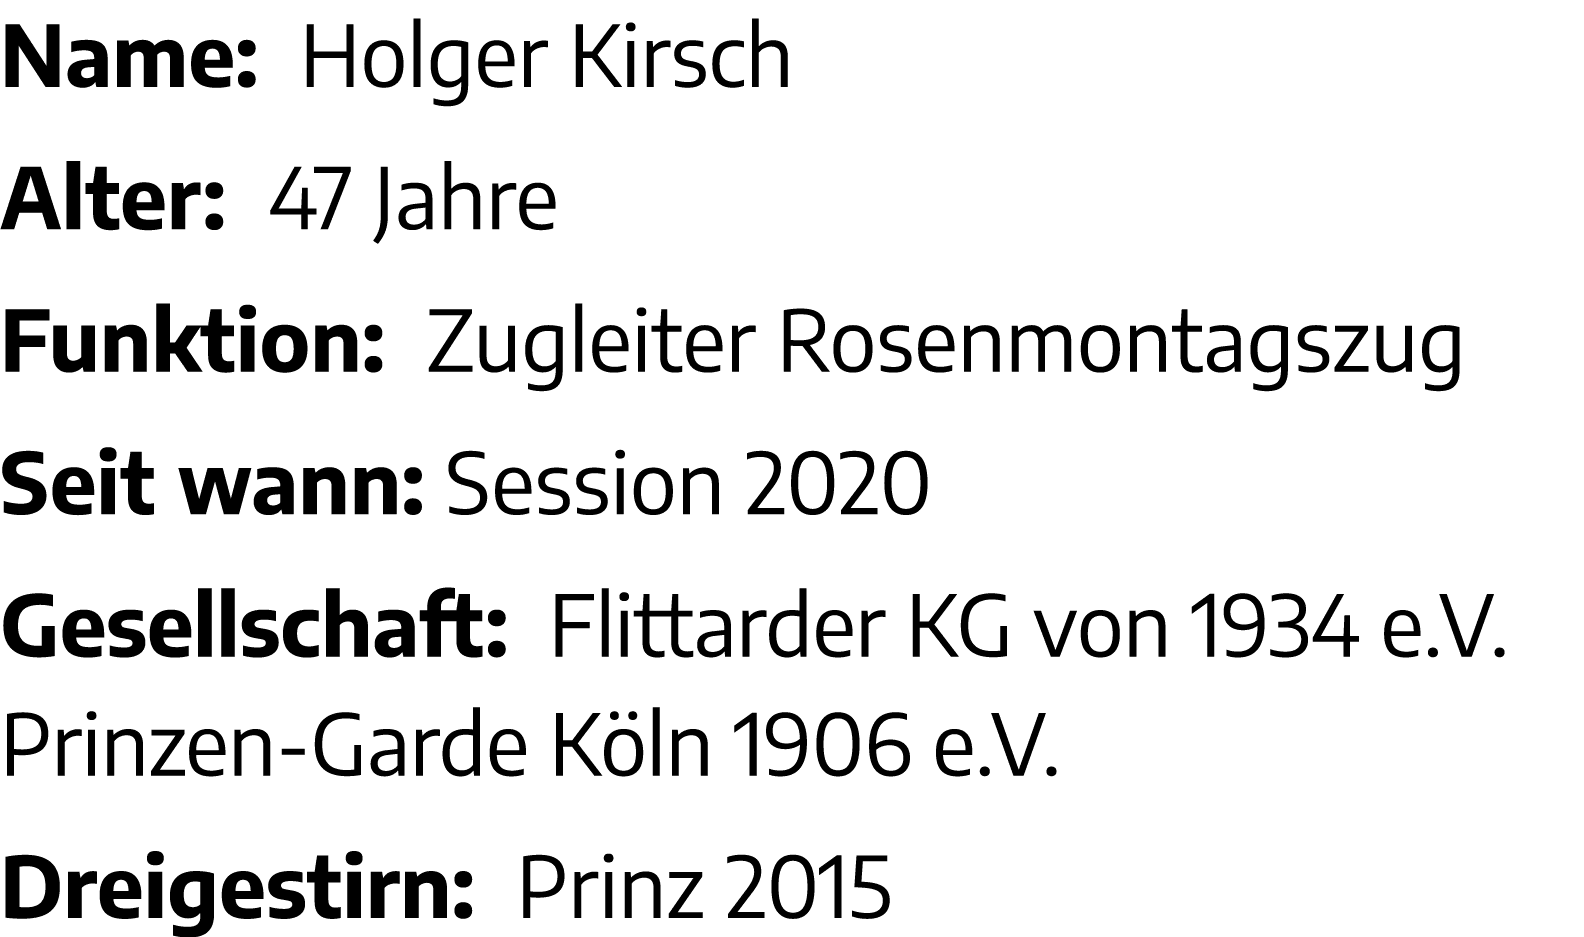 Name: Holger Kirsch Alter: 47 Jahre Funktion: Zugleiter Rosenmontagszug Seit wann: Session 2020 Gesellschaft: Flittar   